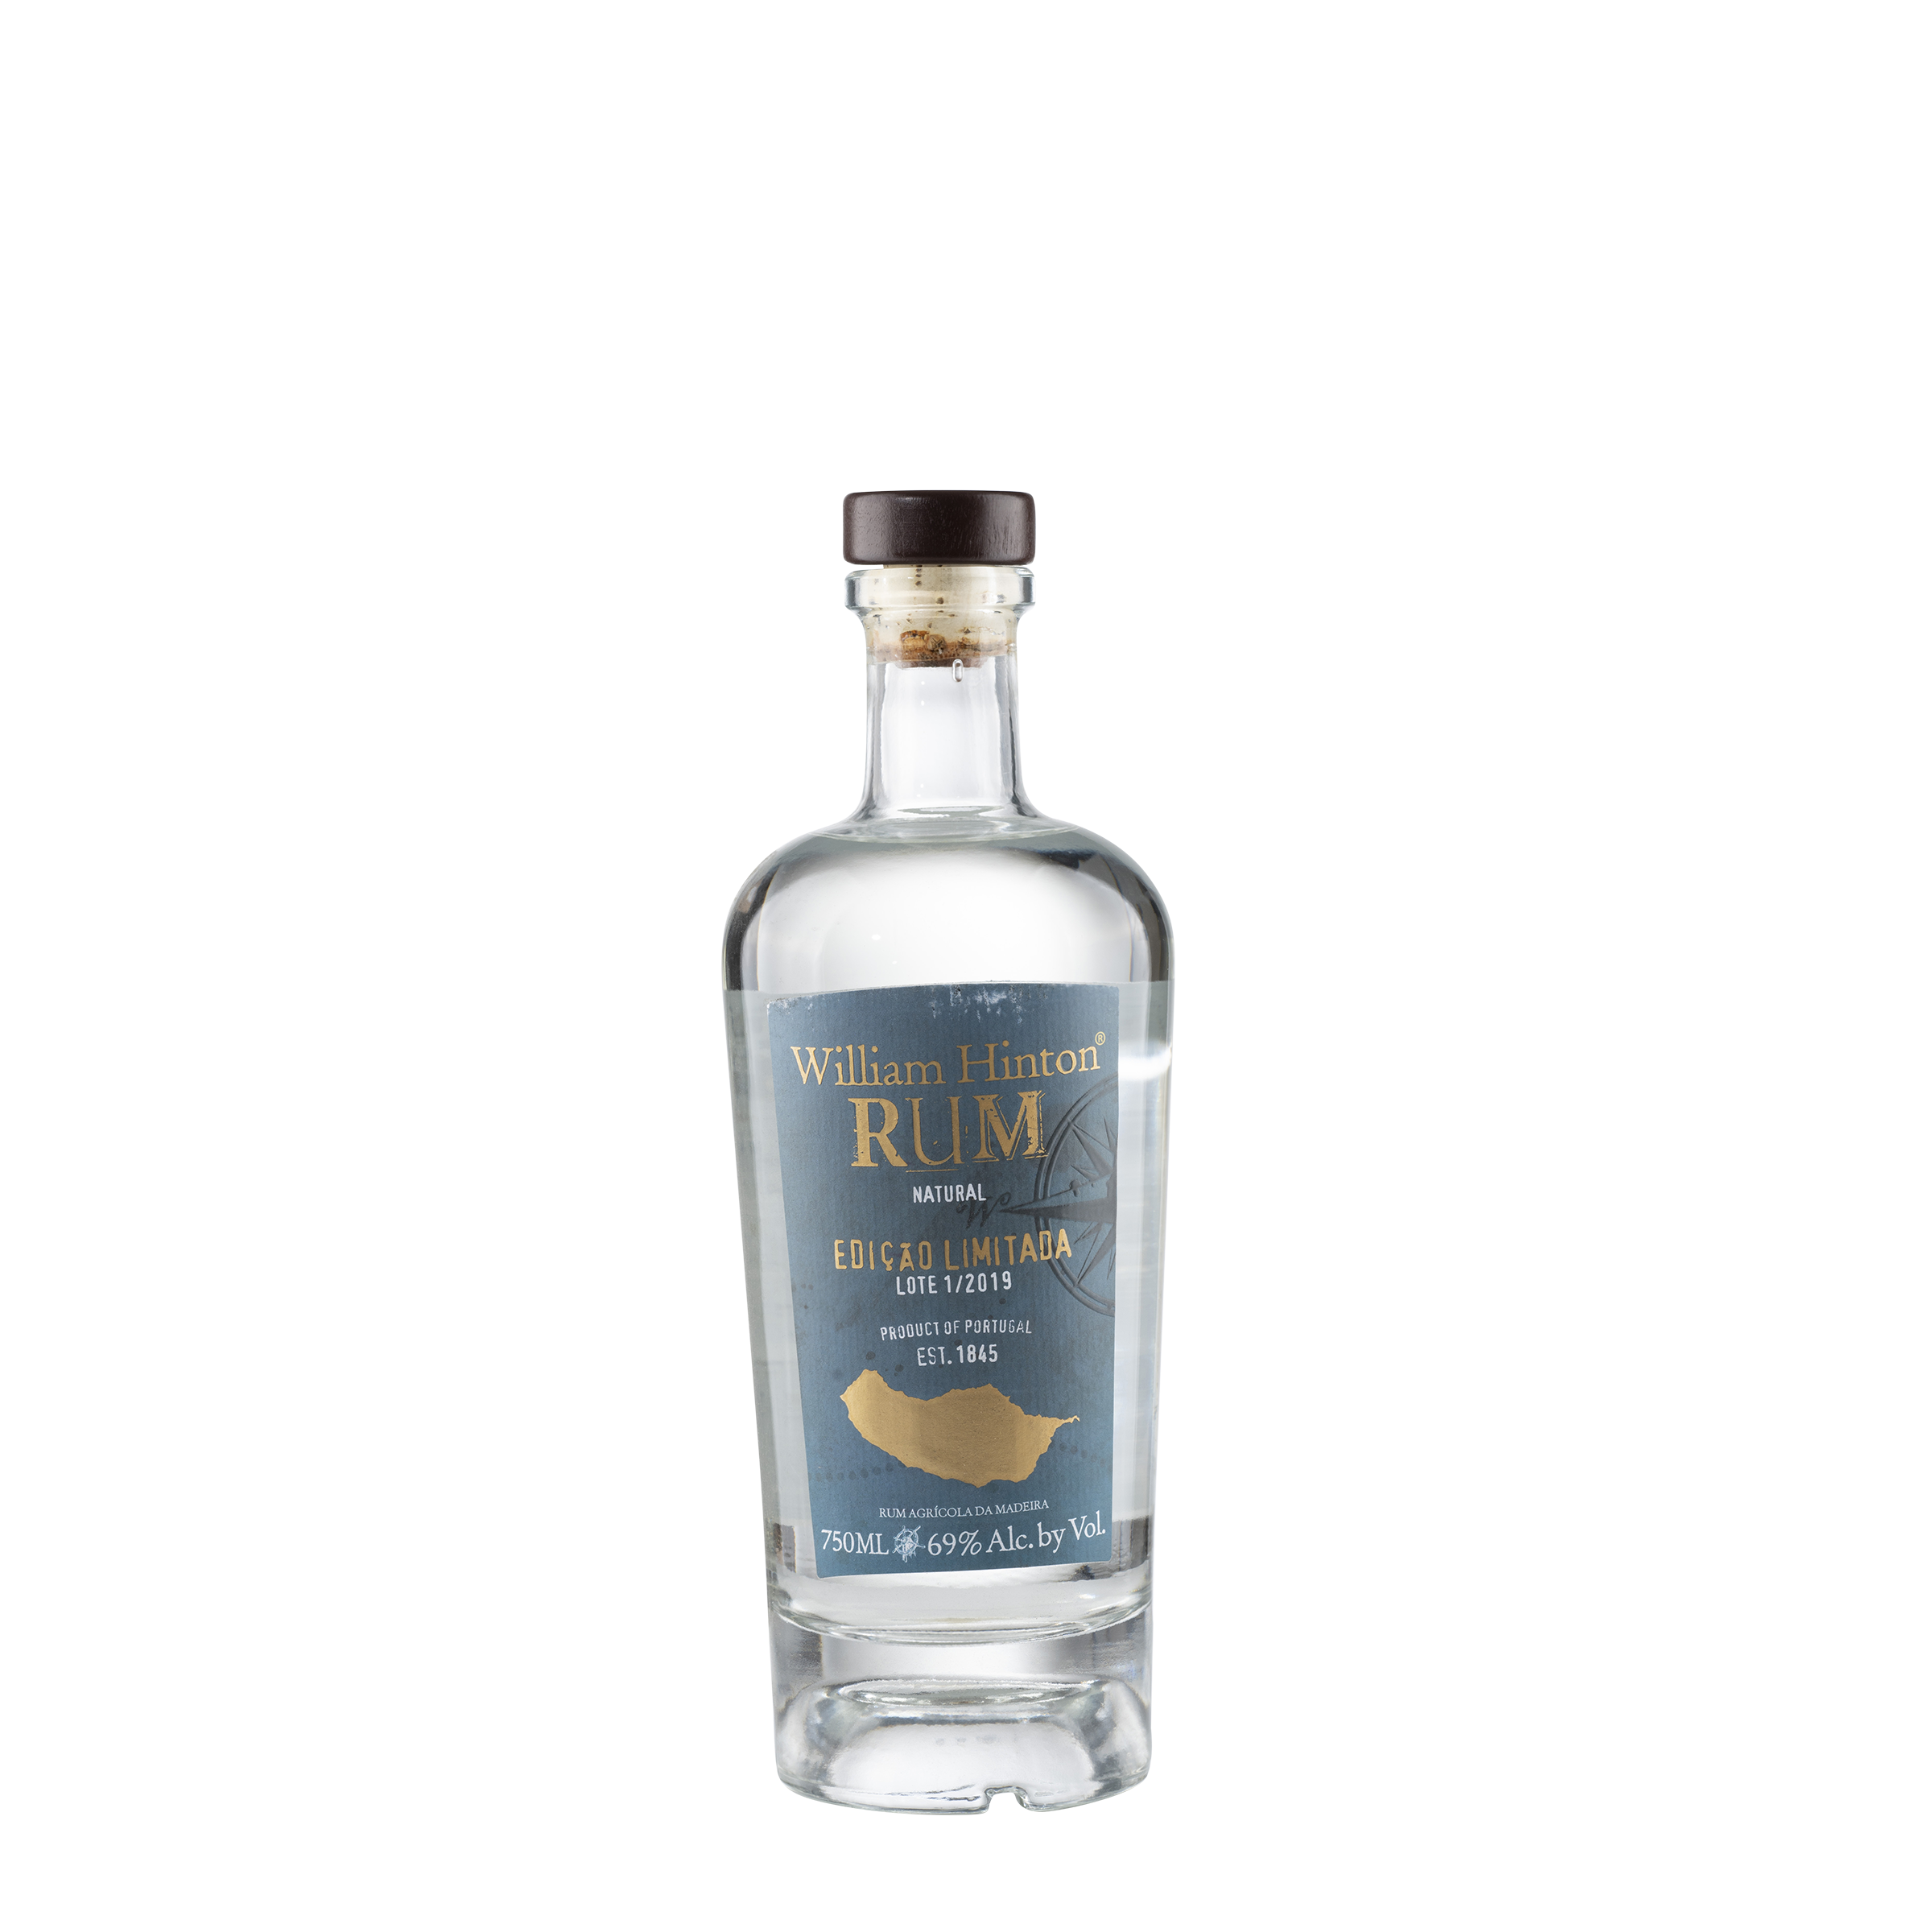 Edicao Limitada Rum Agricola da Madeira Bottle Front